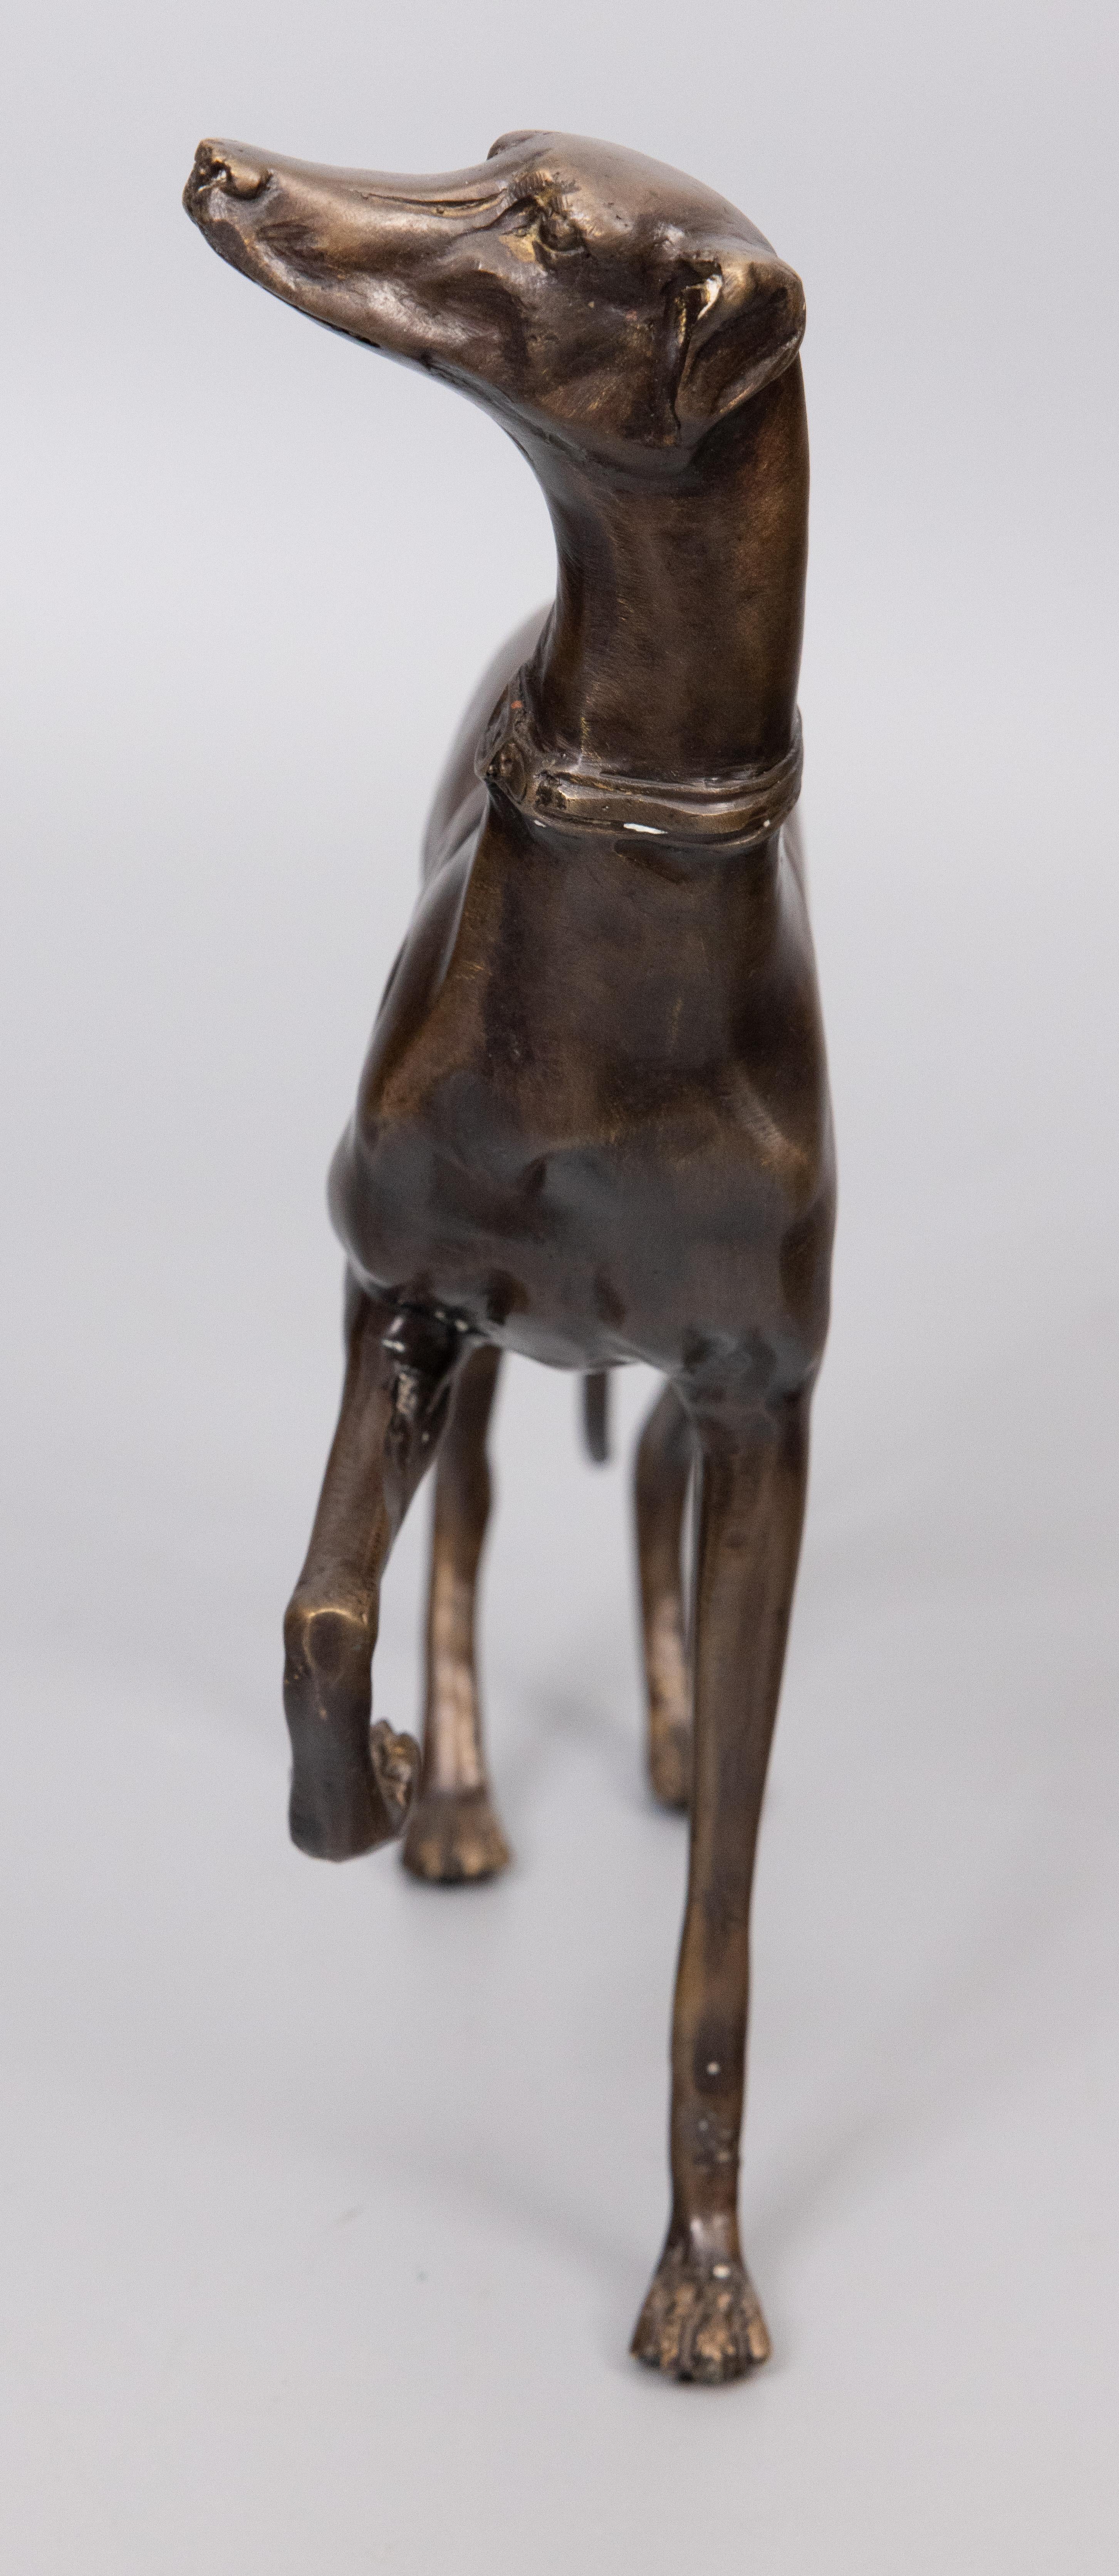 Figurine de sculpture de chien lévrier whippet en bronze français, vers 1960. Ce chien a une expression merveilleuse avec de superbes détails et une belle patine de bronze vieilli. Il est bien fait, solide et lourd, et constituerait un bel ajout à